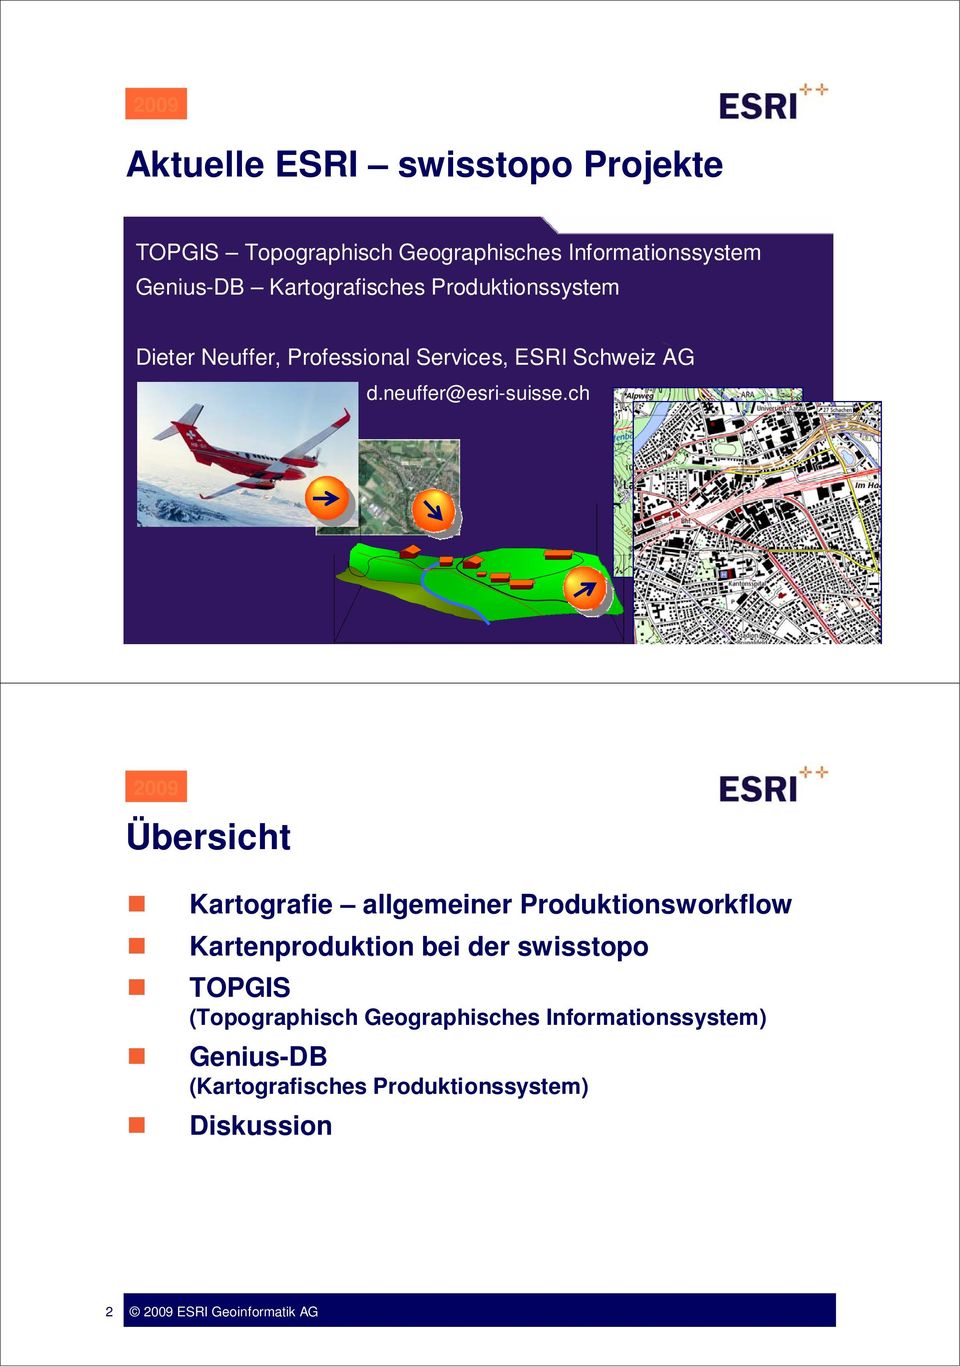 ch 2008 ESRI Geoinformatik GmbH Übersicht Kartografie allgemeiner Produktionsworkflow Kartenproduktion bei der